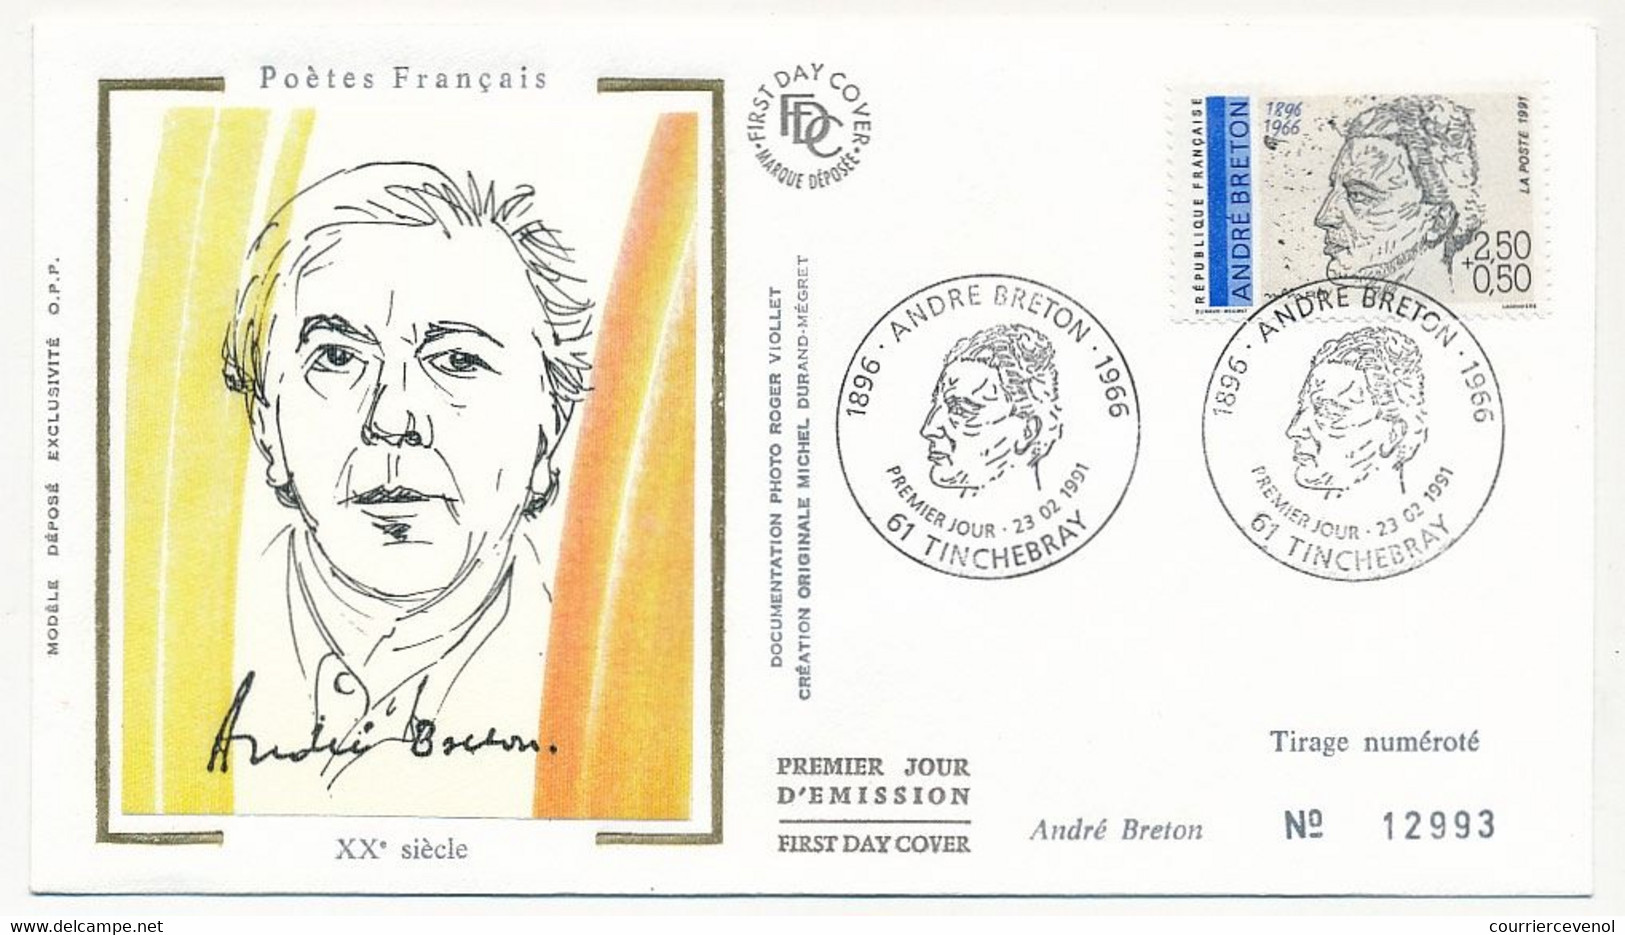 FRANCE - 6 Enveloppes FDC Soie - Série "Poètes" - Eluard, Ponge, Aragon, Prévert, Char, Breton - 23/02/1991 - 1990-1999